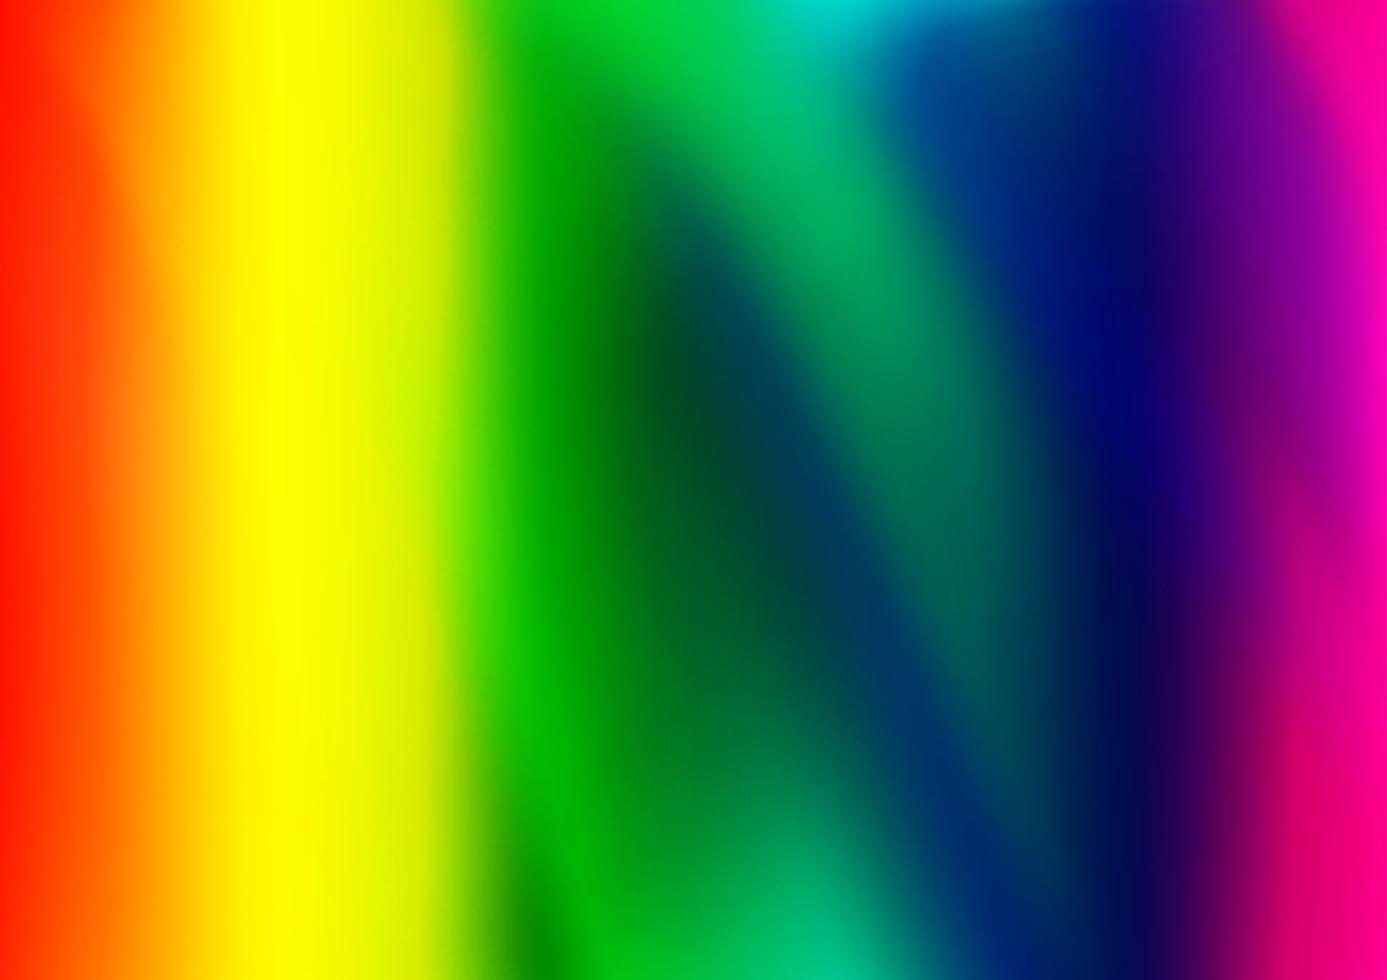 Licht mehrfarbig, Regenbogen-Vektor-Unschärfe-Muster. vektor